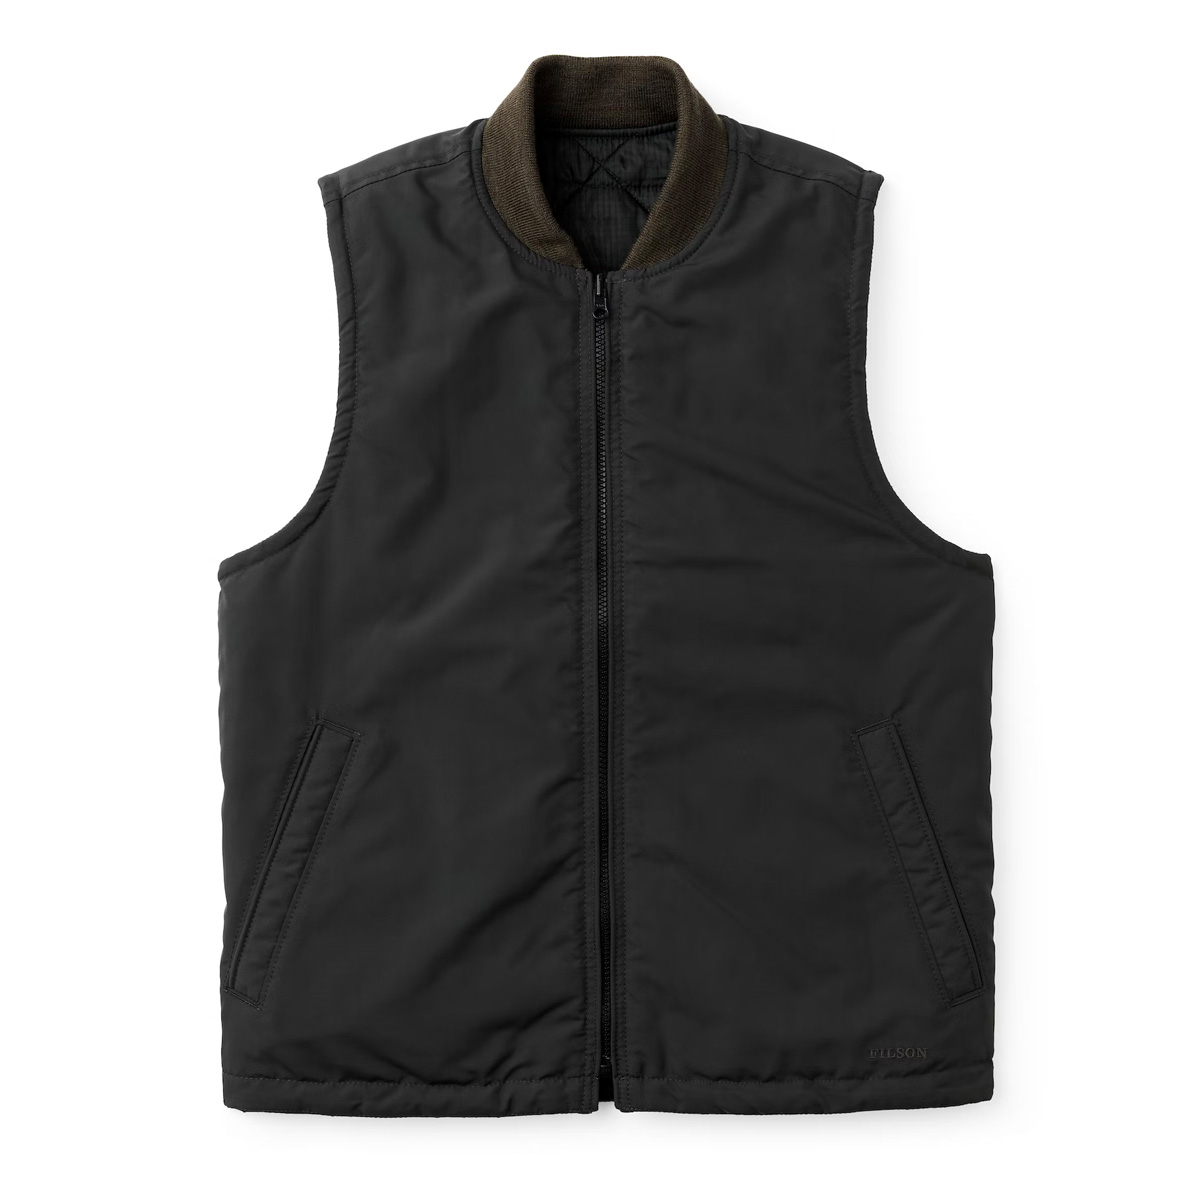 Filson Eagle Plains Vest Liner, fabulous vest for mild days and an ...